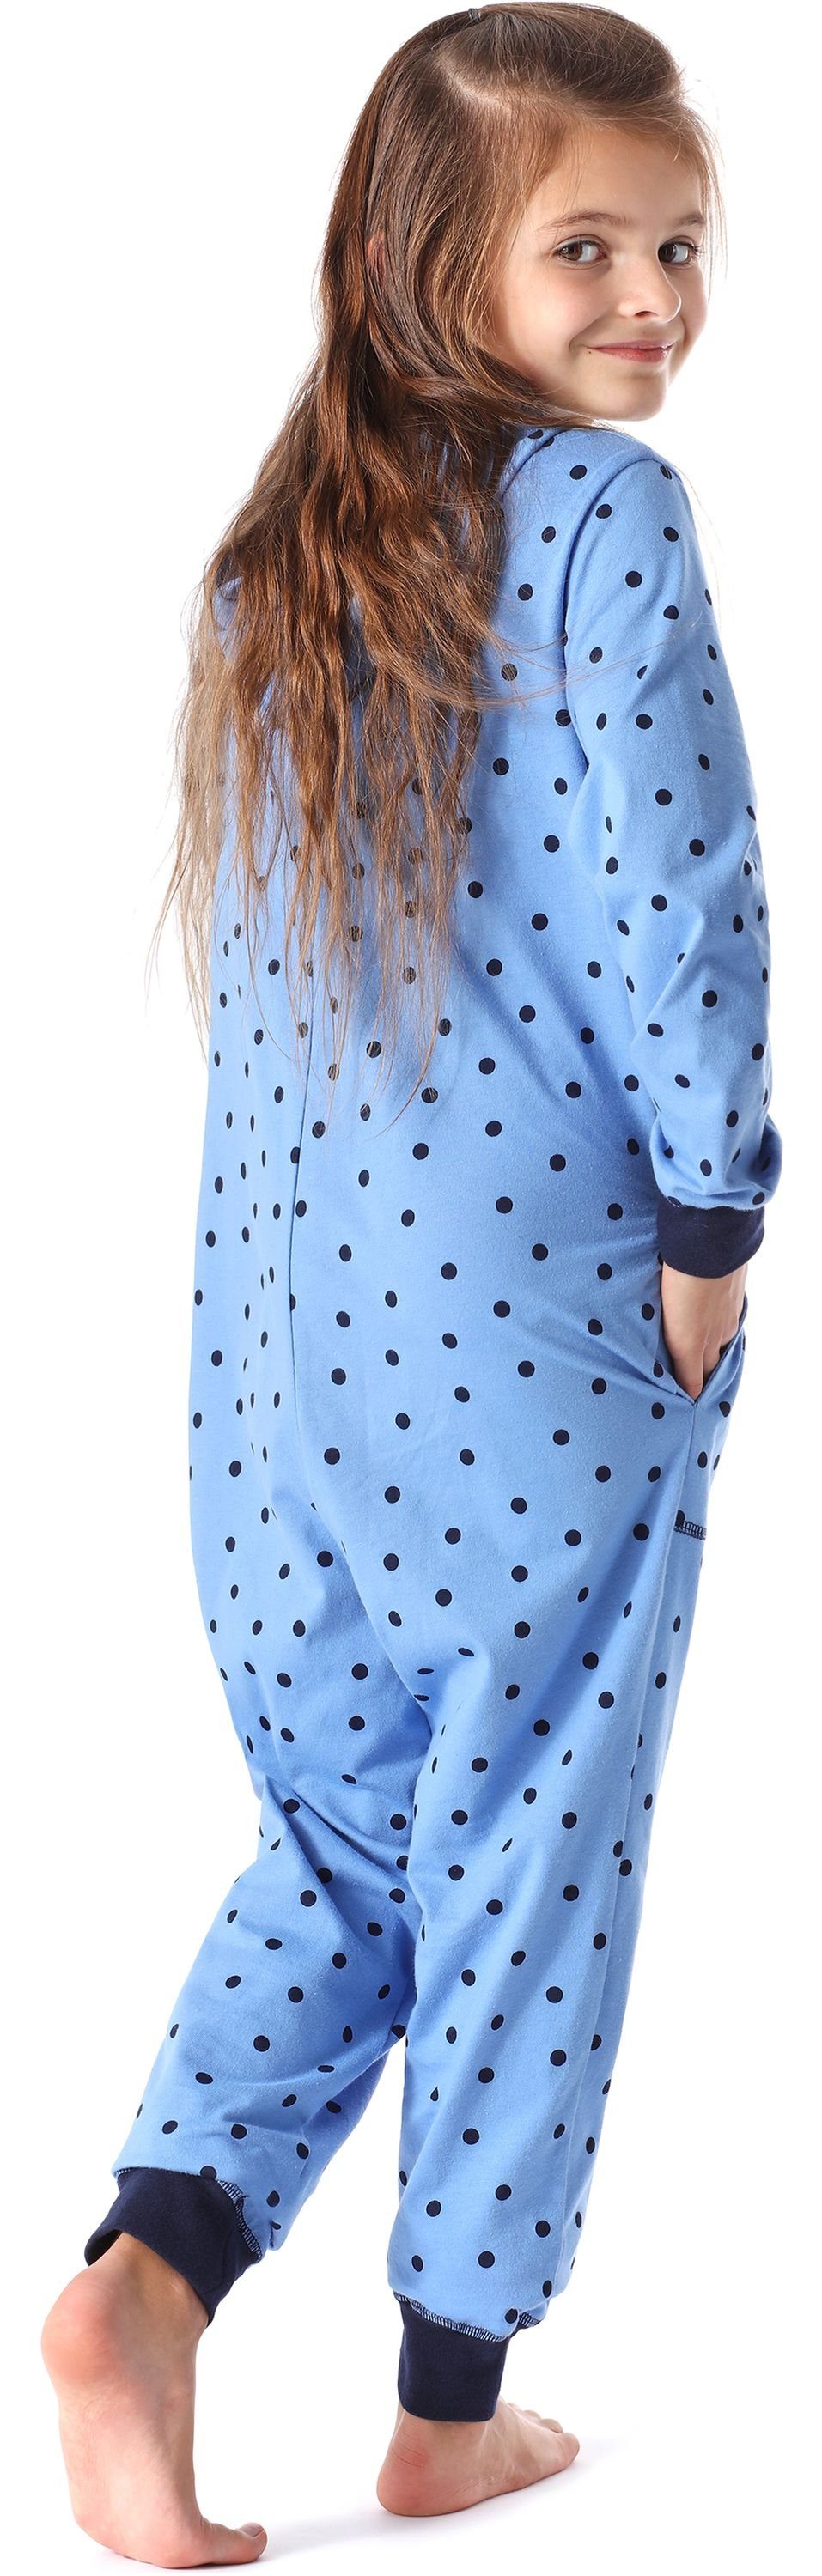 Merry Style Schlafanzug Punkte Blaue MS10-223 mit Kapuze Mädchen Schlafoverall